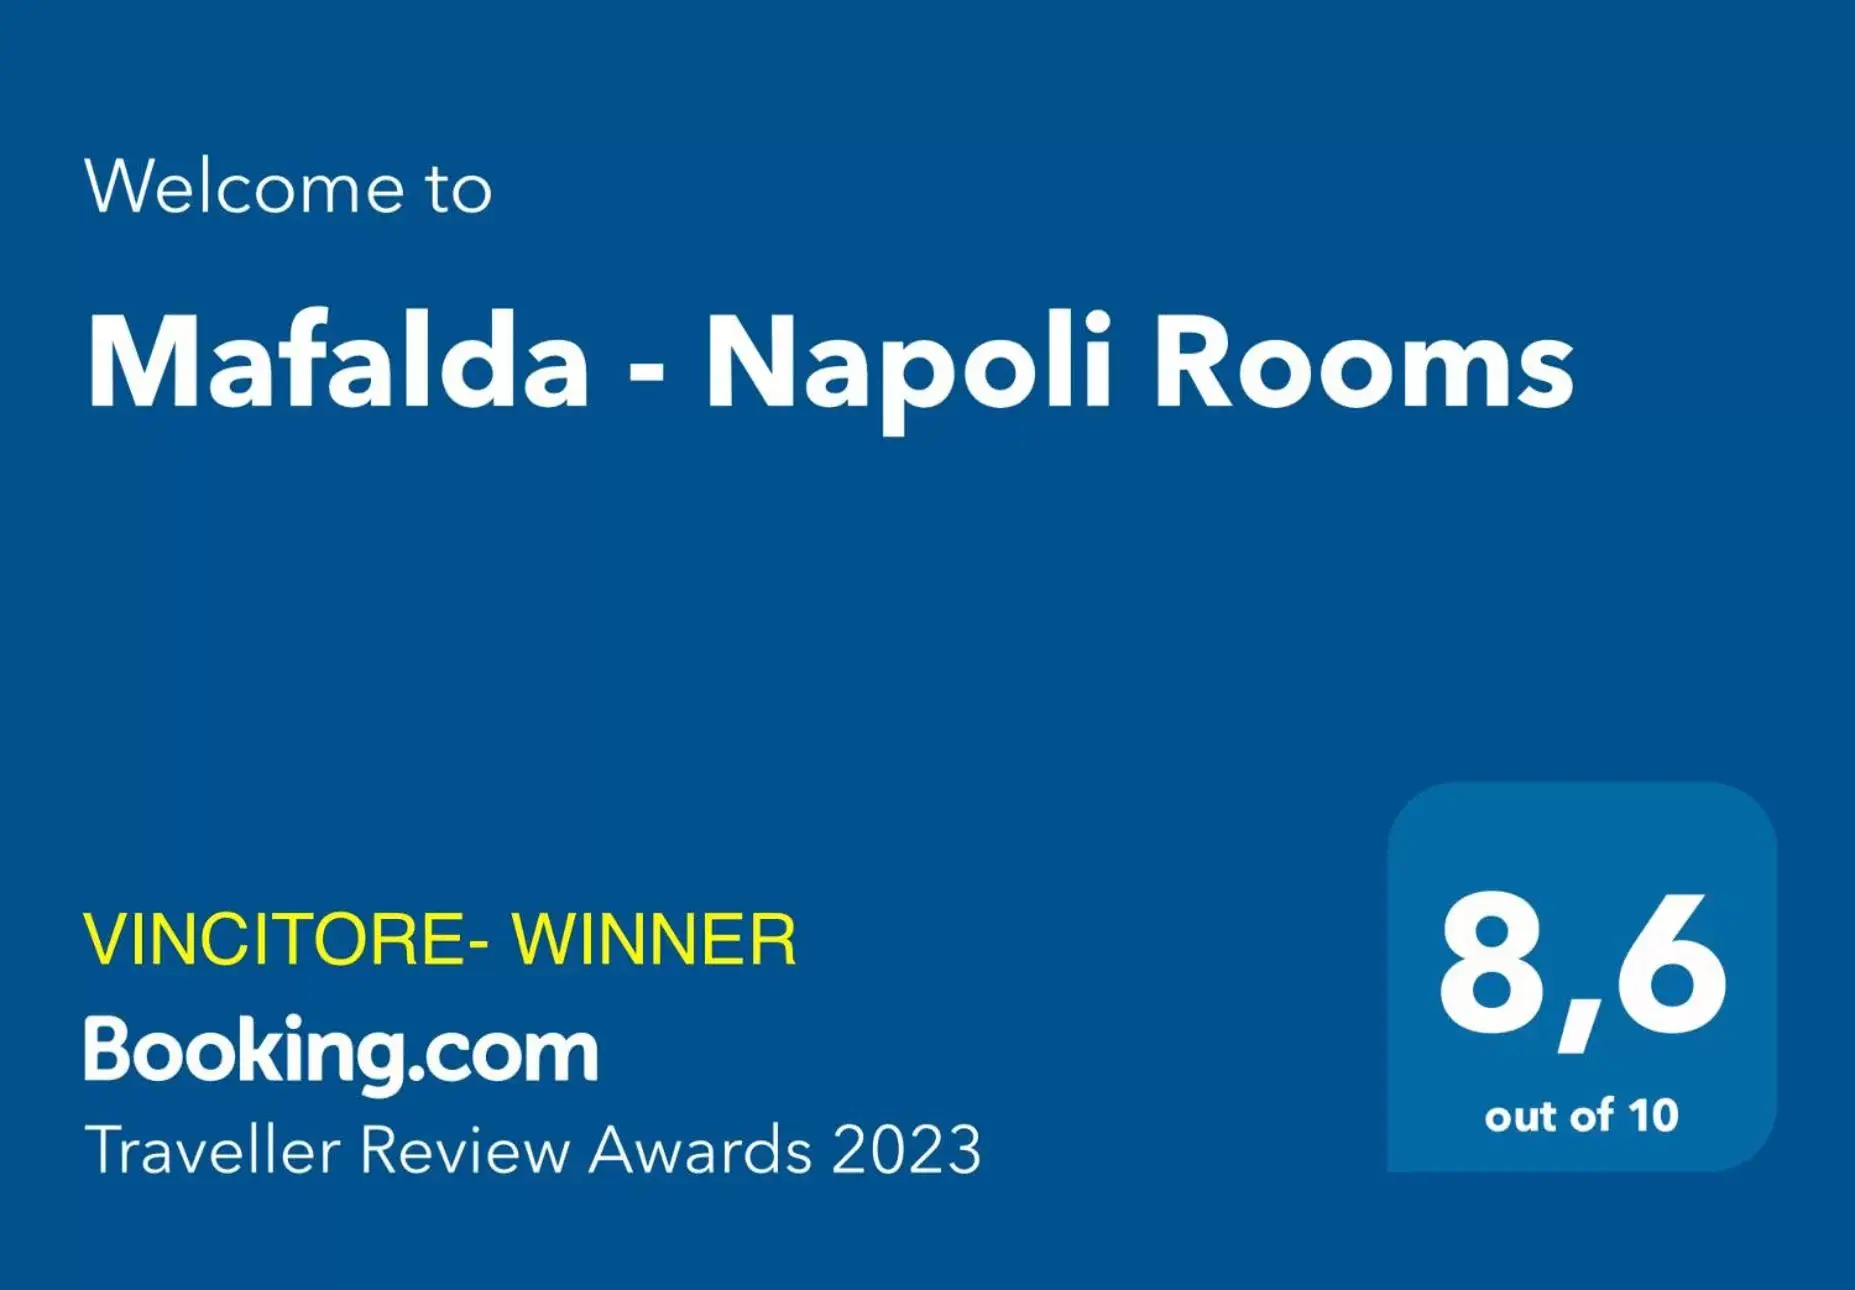 Logo/Certificate/Sign/Award in Mafalda - Napoli Rooms